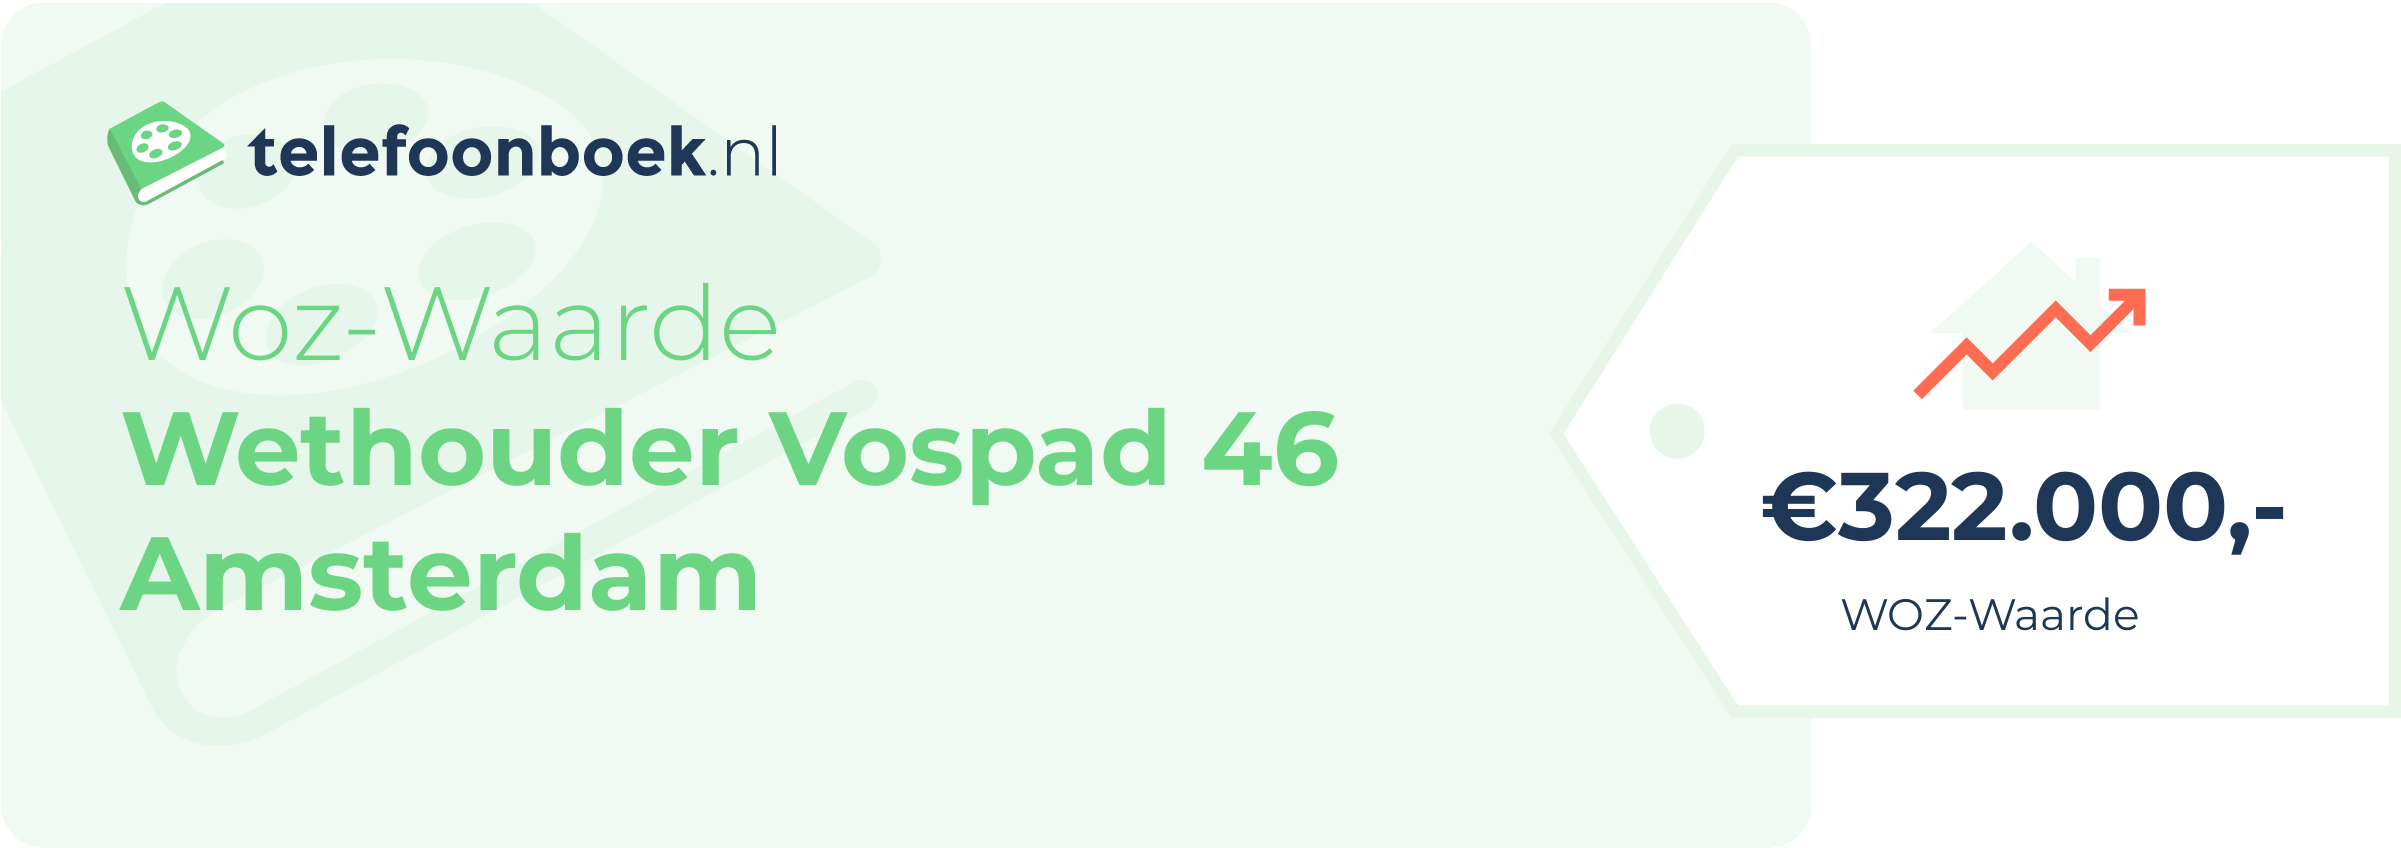 WOZ-waarde Wethouder Vospad 46 Amsterdam